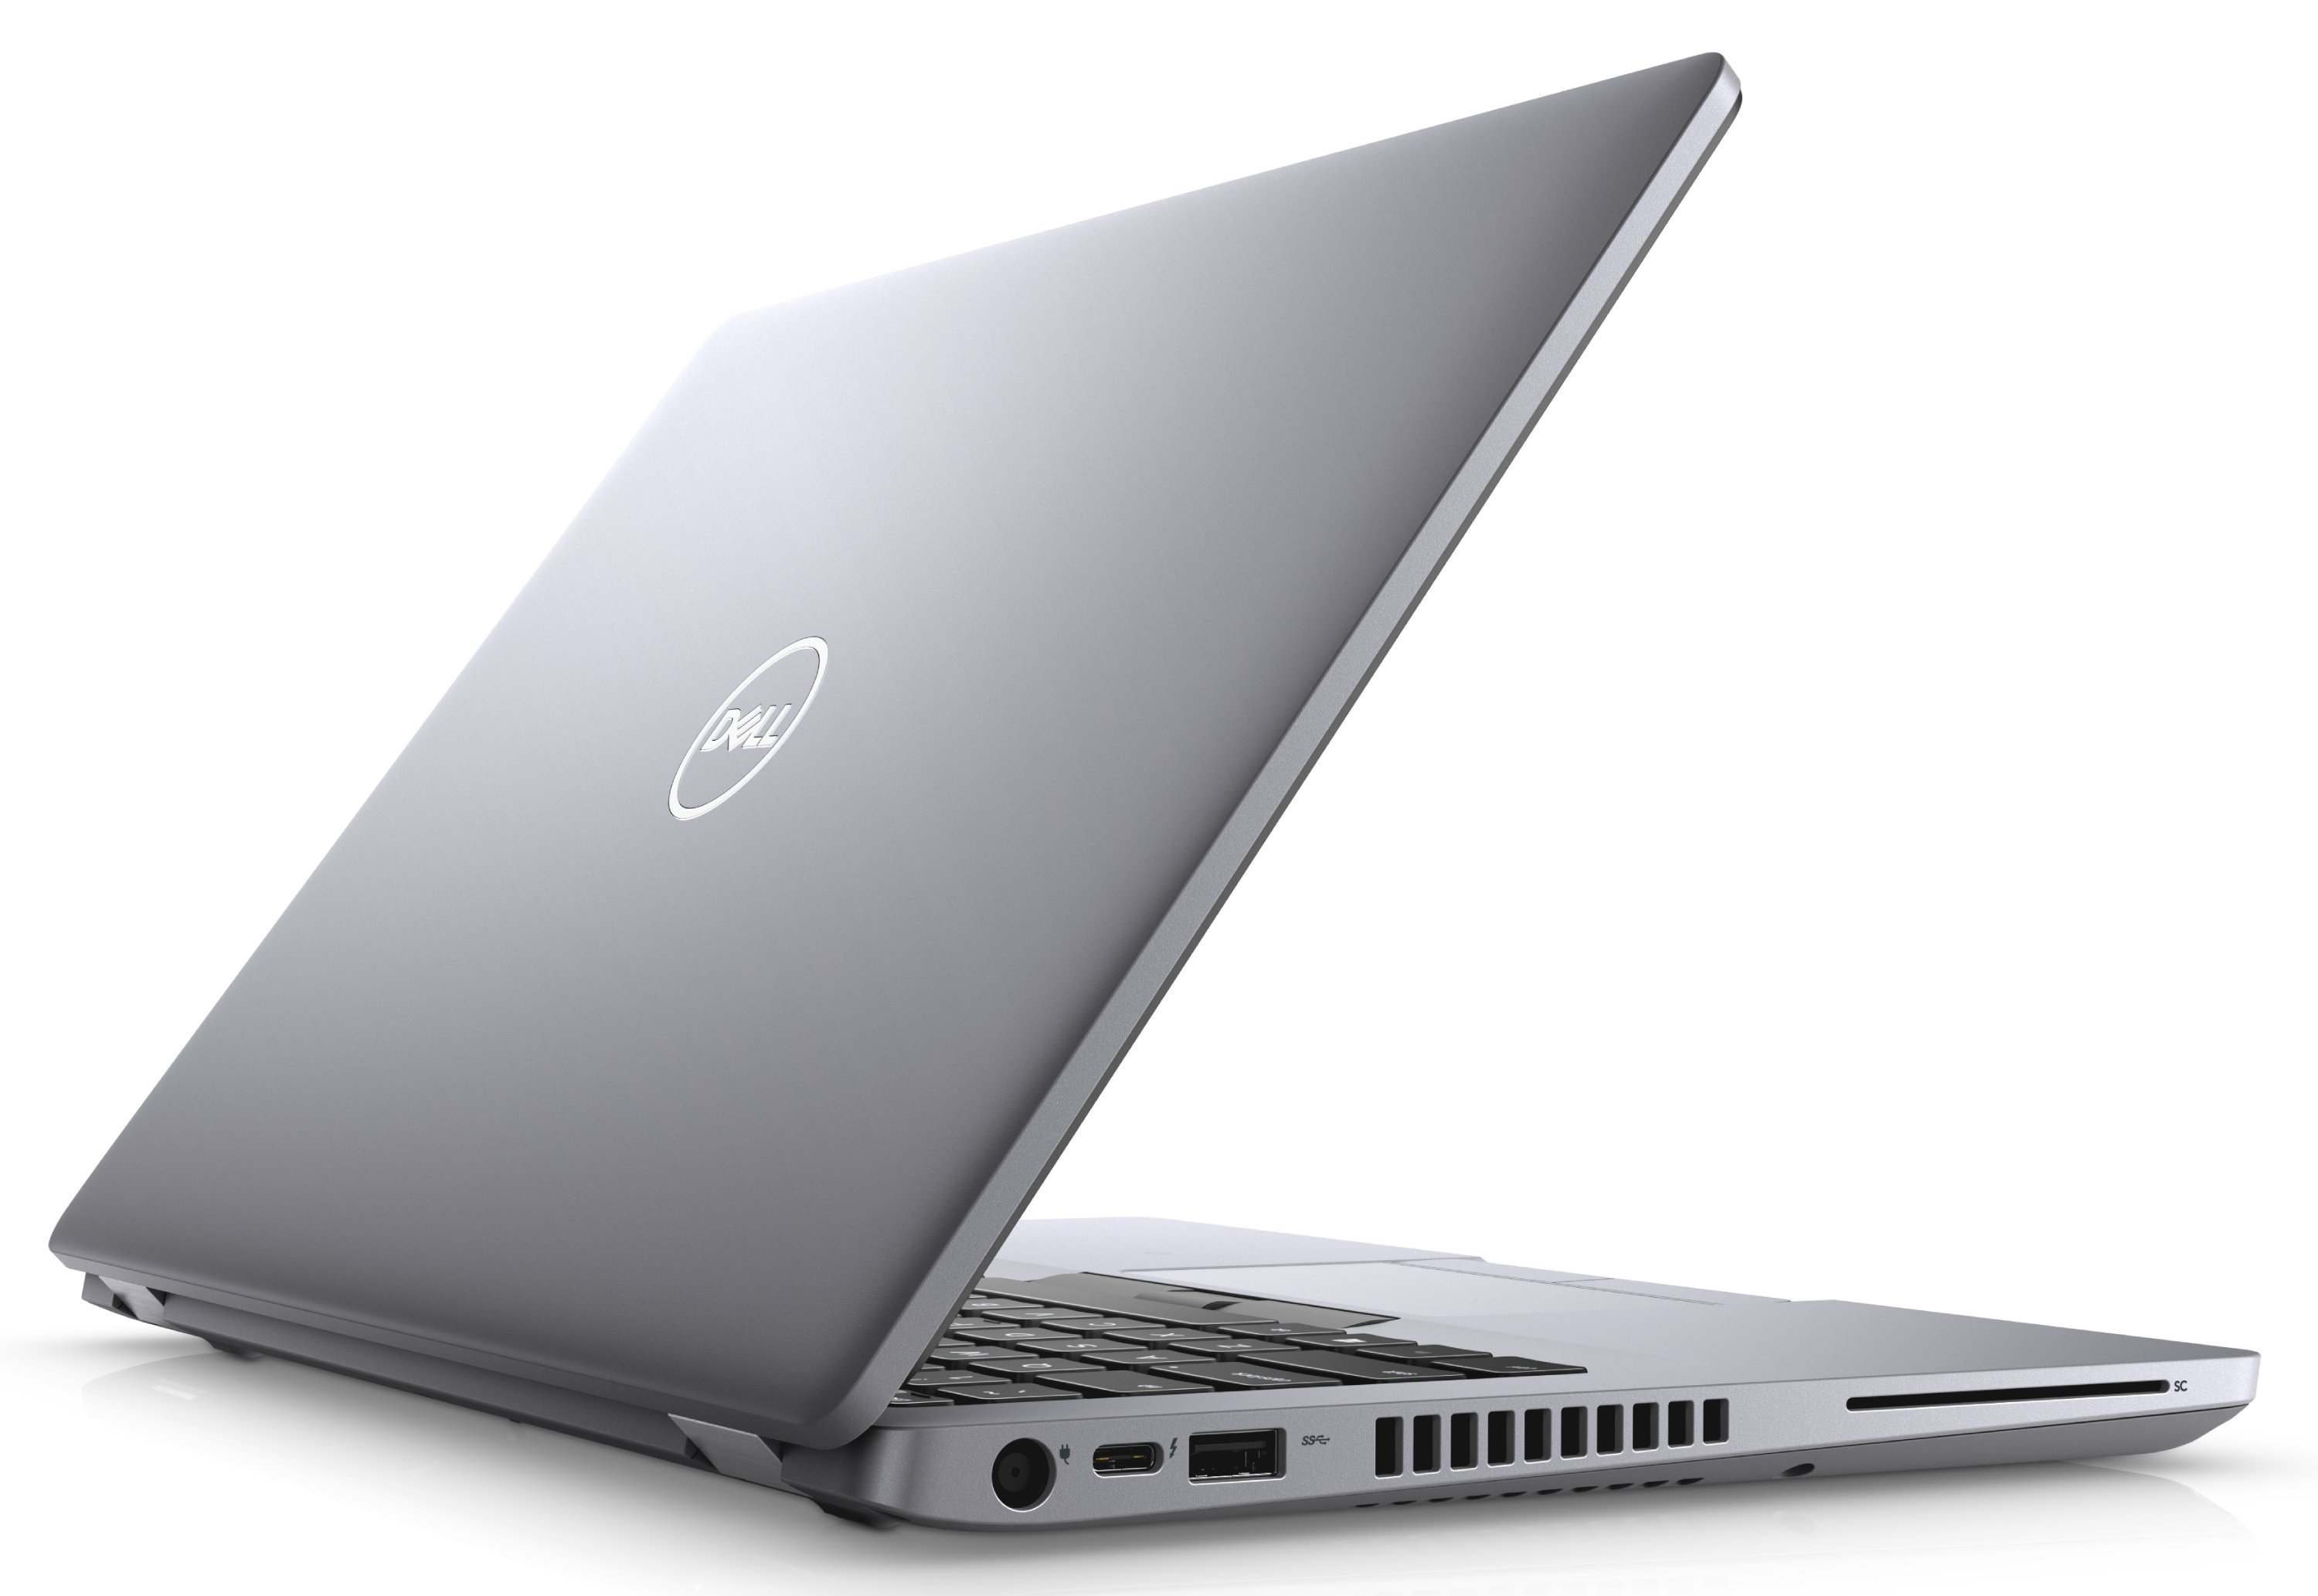 Ноутбук Dell Latitude 5410 Core i5-10210U (1,6GHz) 14,0" FullHD WVA Antiglare 8GB (1x8GB) DDR4 256GB SSD Intel UHD 620 TPM 4 cell (68Whr) W10 Pro 3y NBD gray-39134